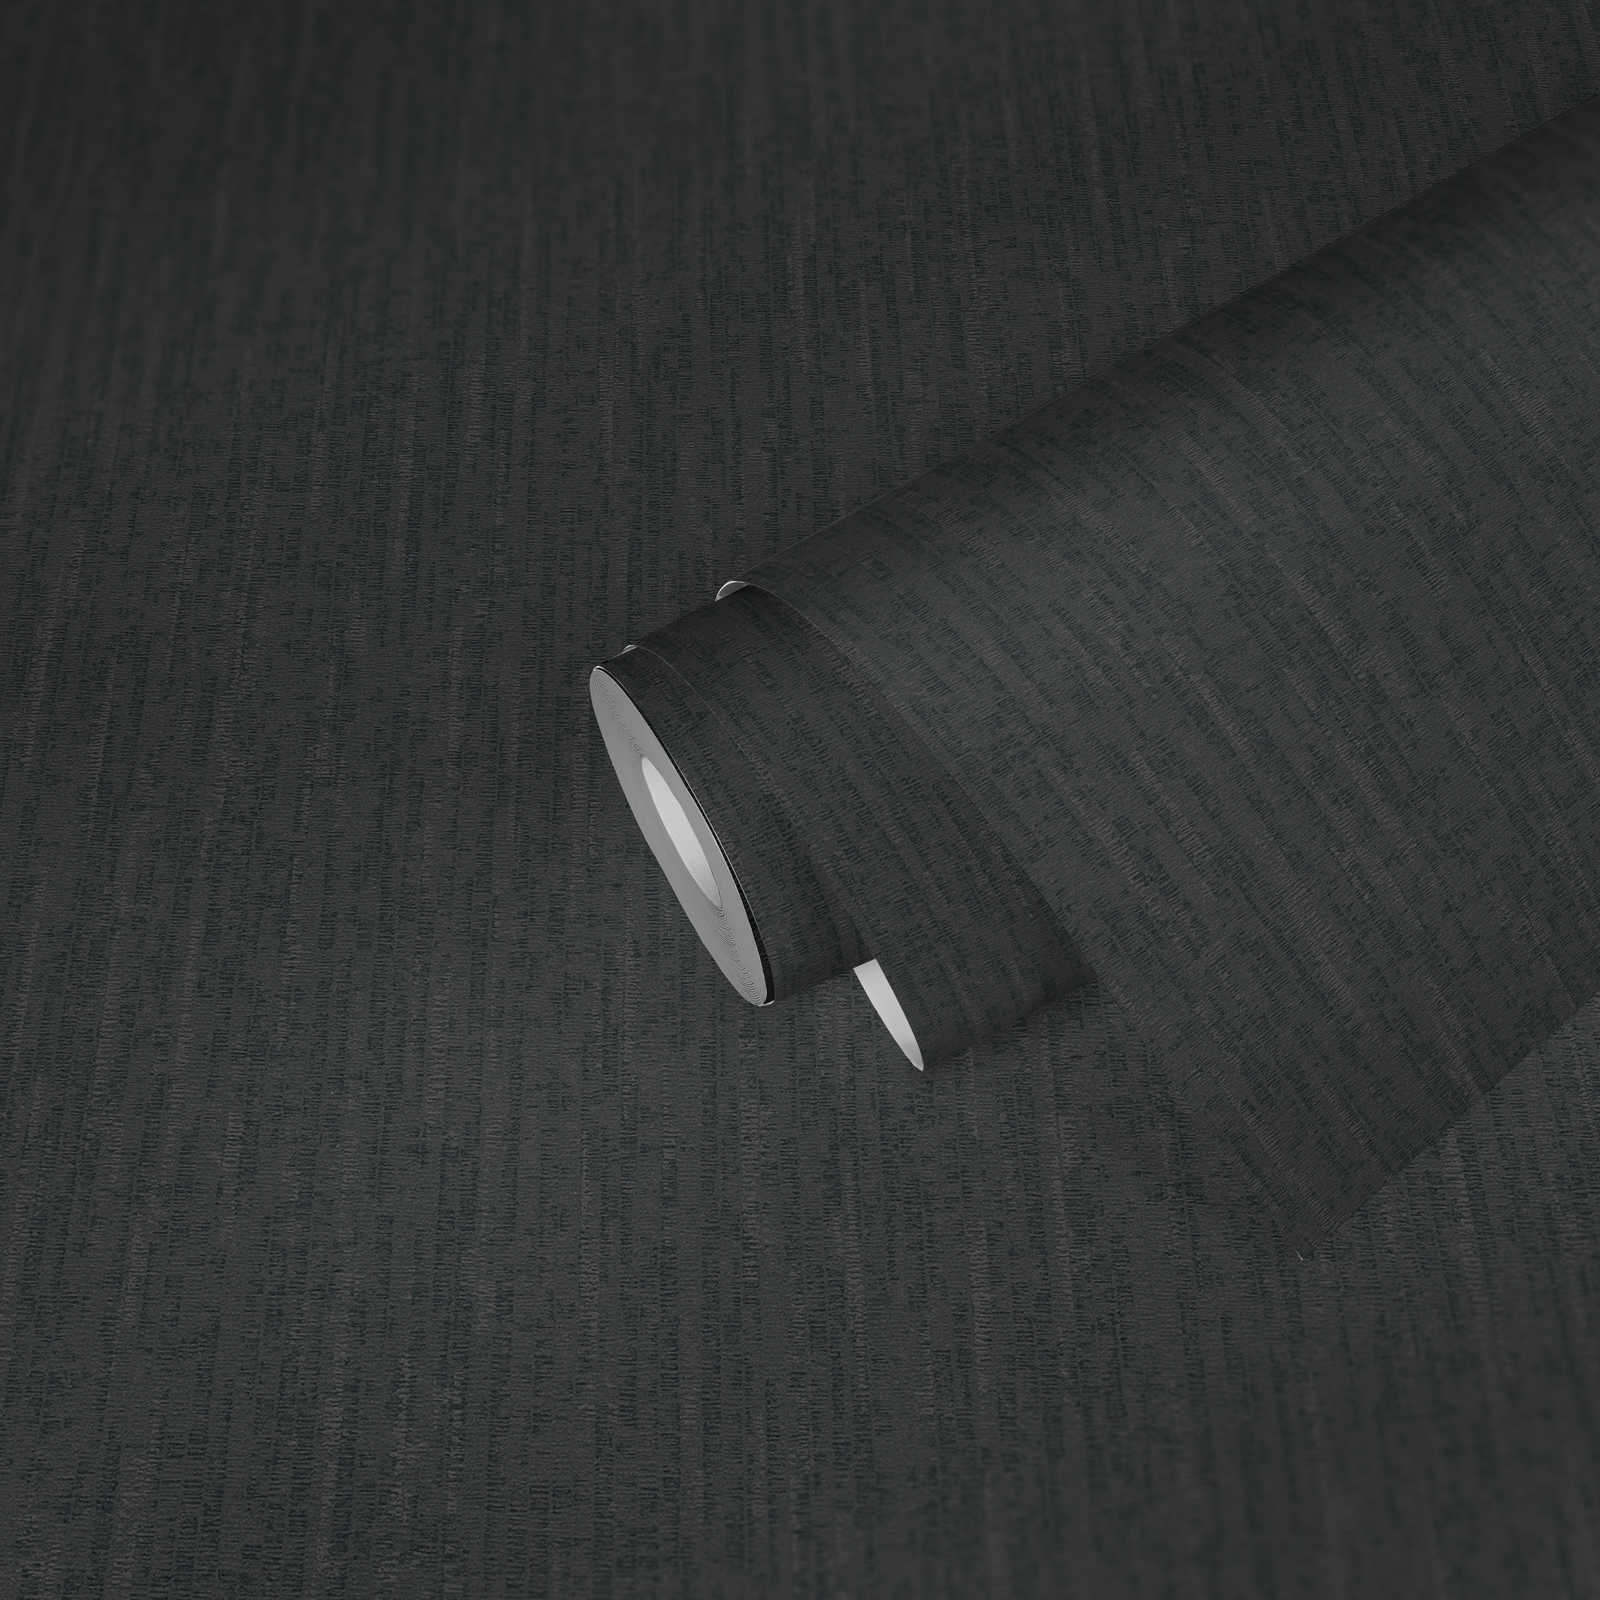             Schwarze Tapete mit Strukturdesign in Textiloptik & Glanzeffekt – Schwarz
        